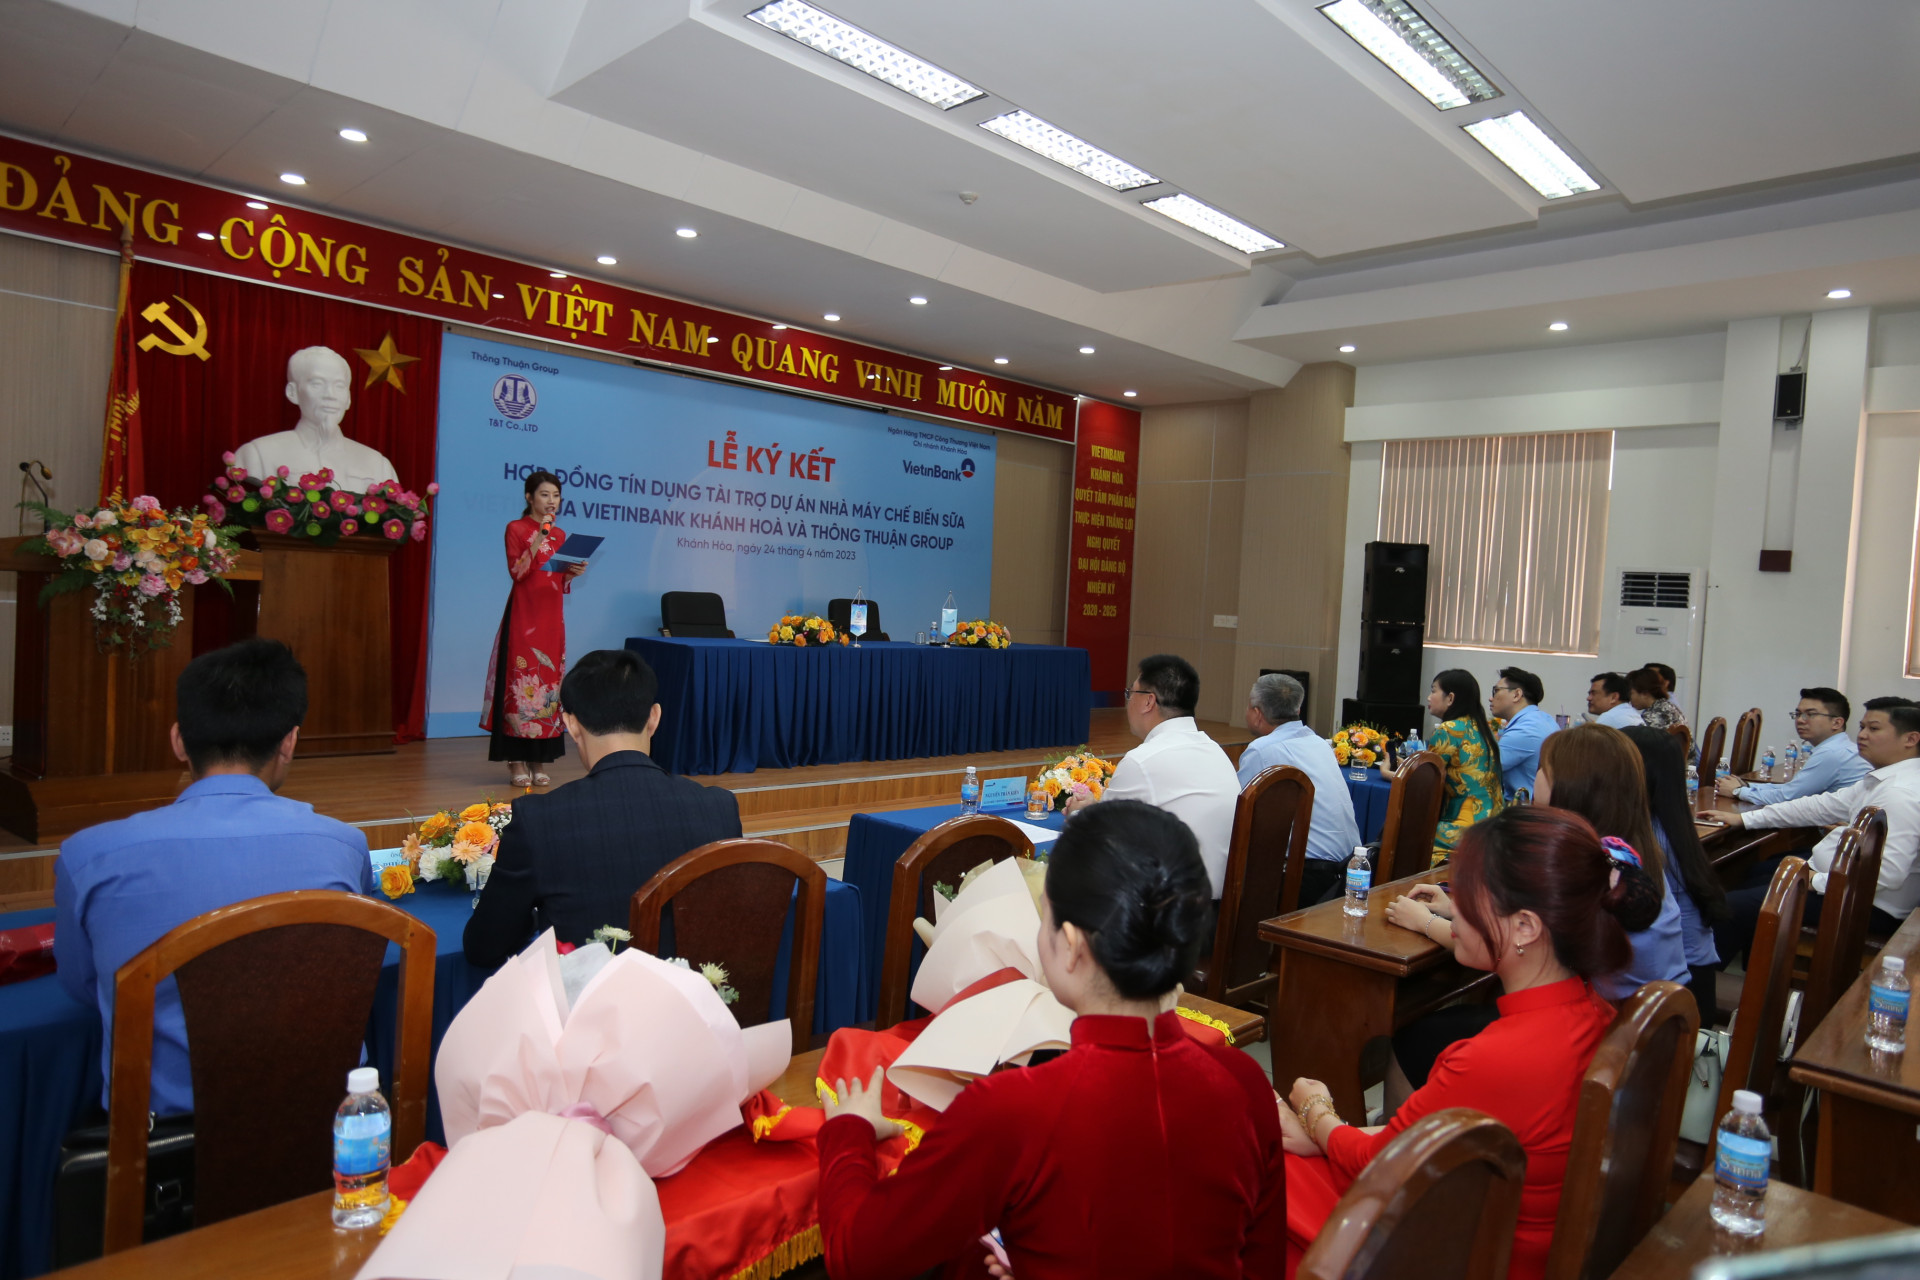 Quang cảnh buổi lễ ký kết hợp đồng giữa VietinBank Chi nhánh Khánh Hòa và Thông Thuận Group.